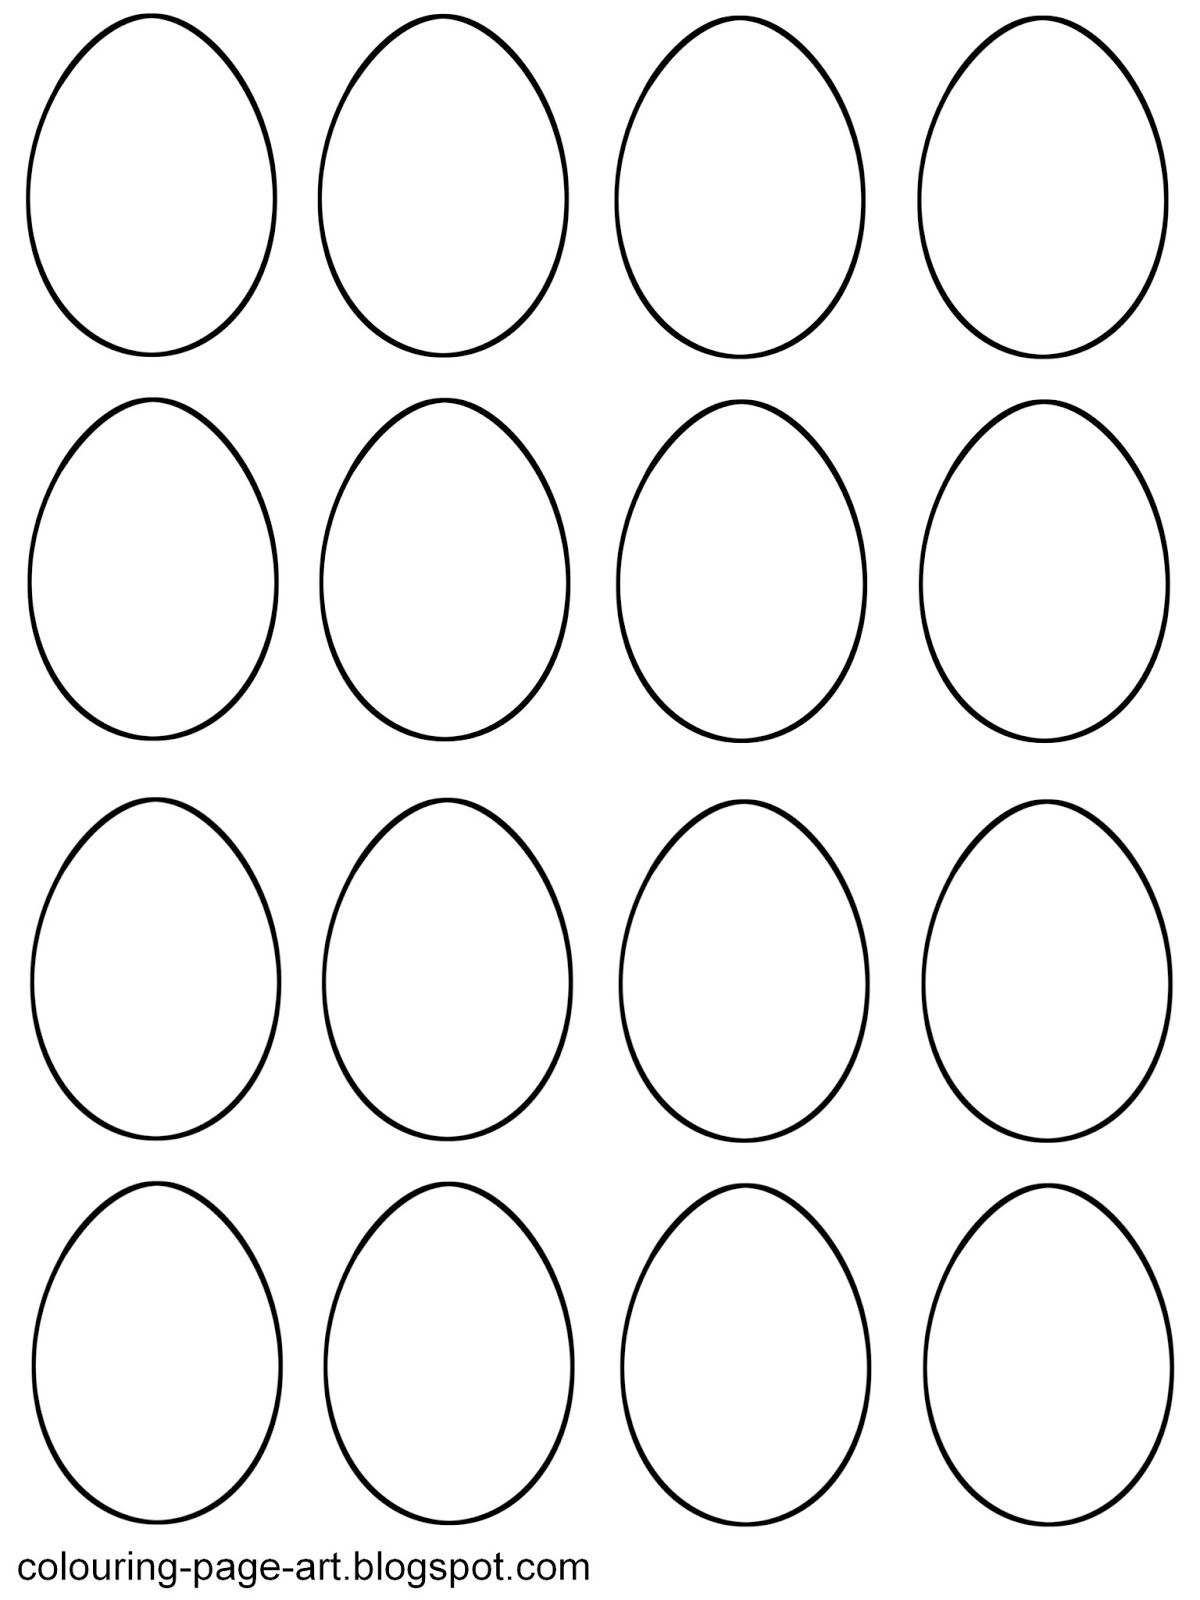 Blank Easter Egg Templates